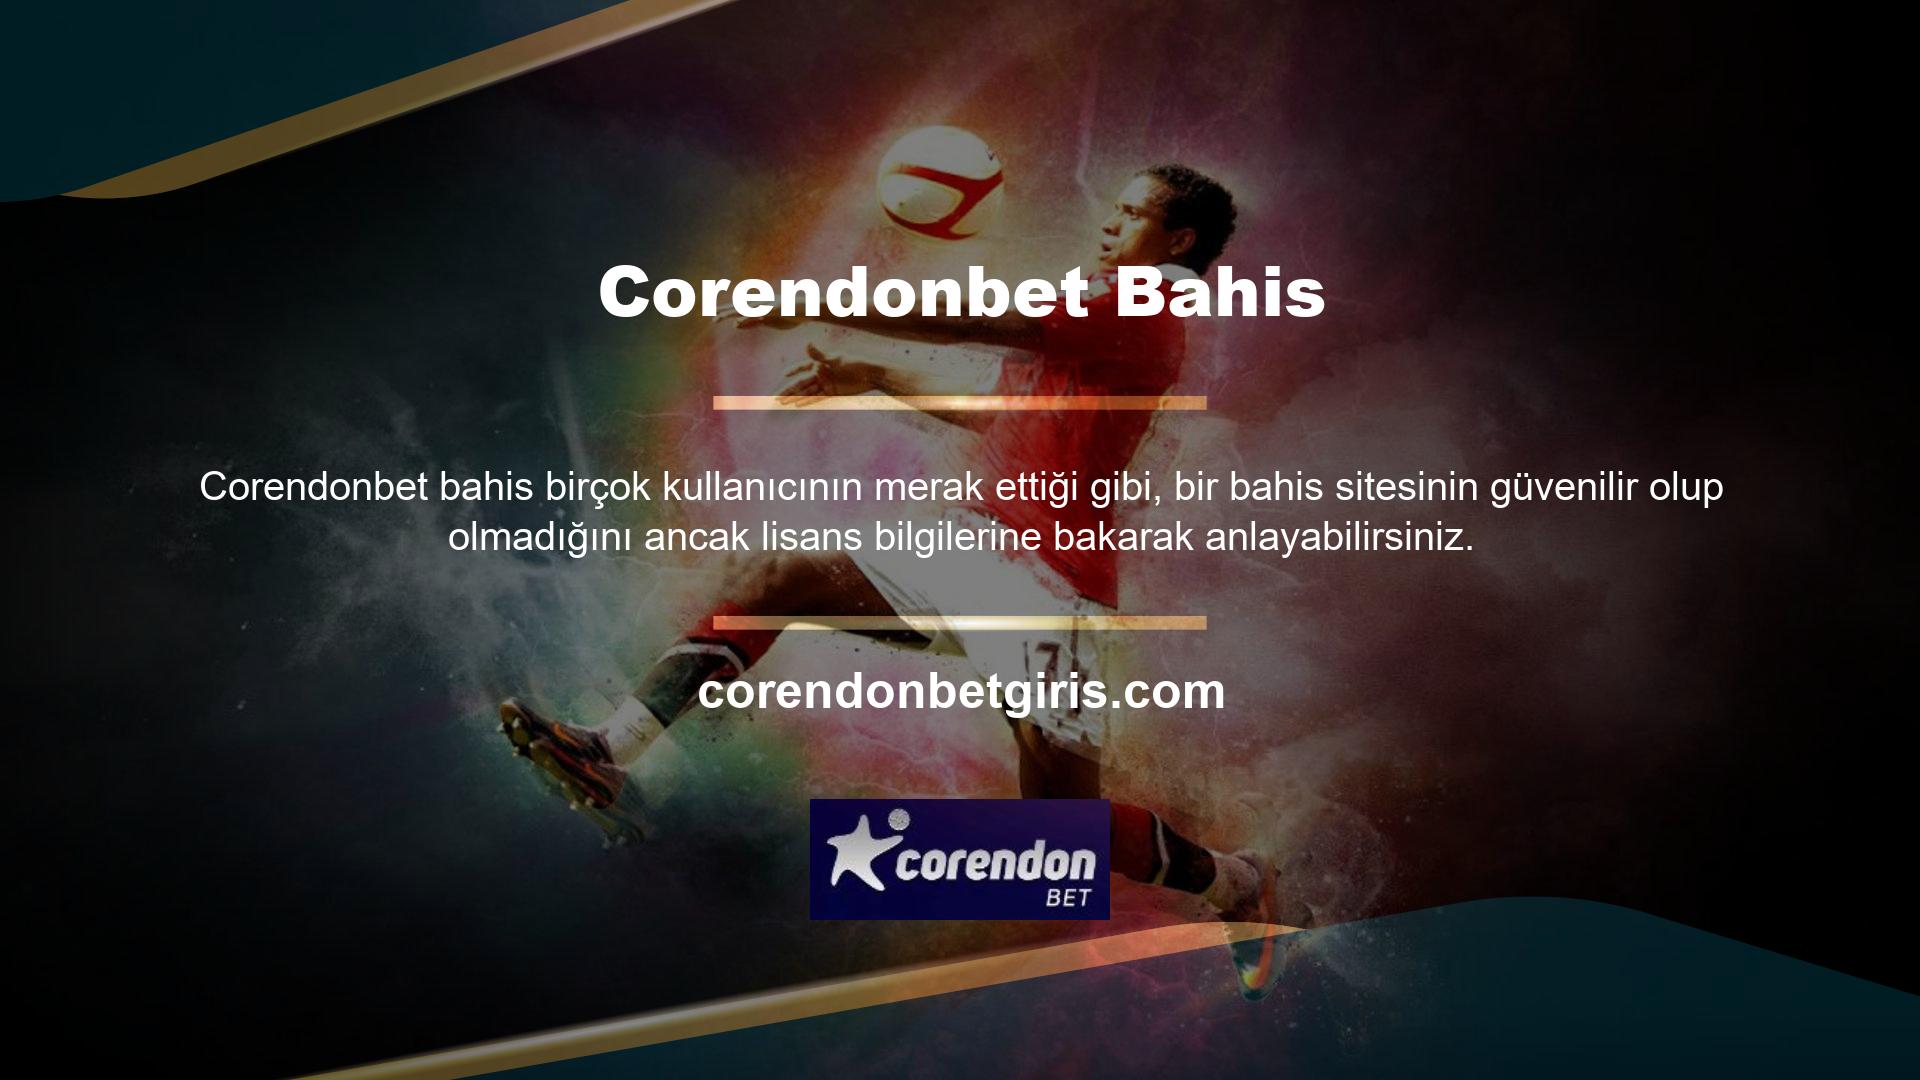 Corendonbet, güvenilirliğini ve kalitesini lisansı ile kanıtlayan sitelerden biridir